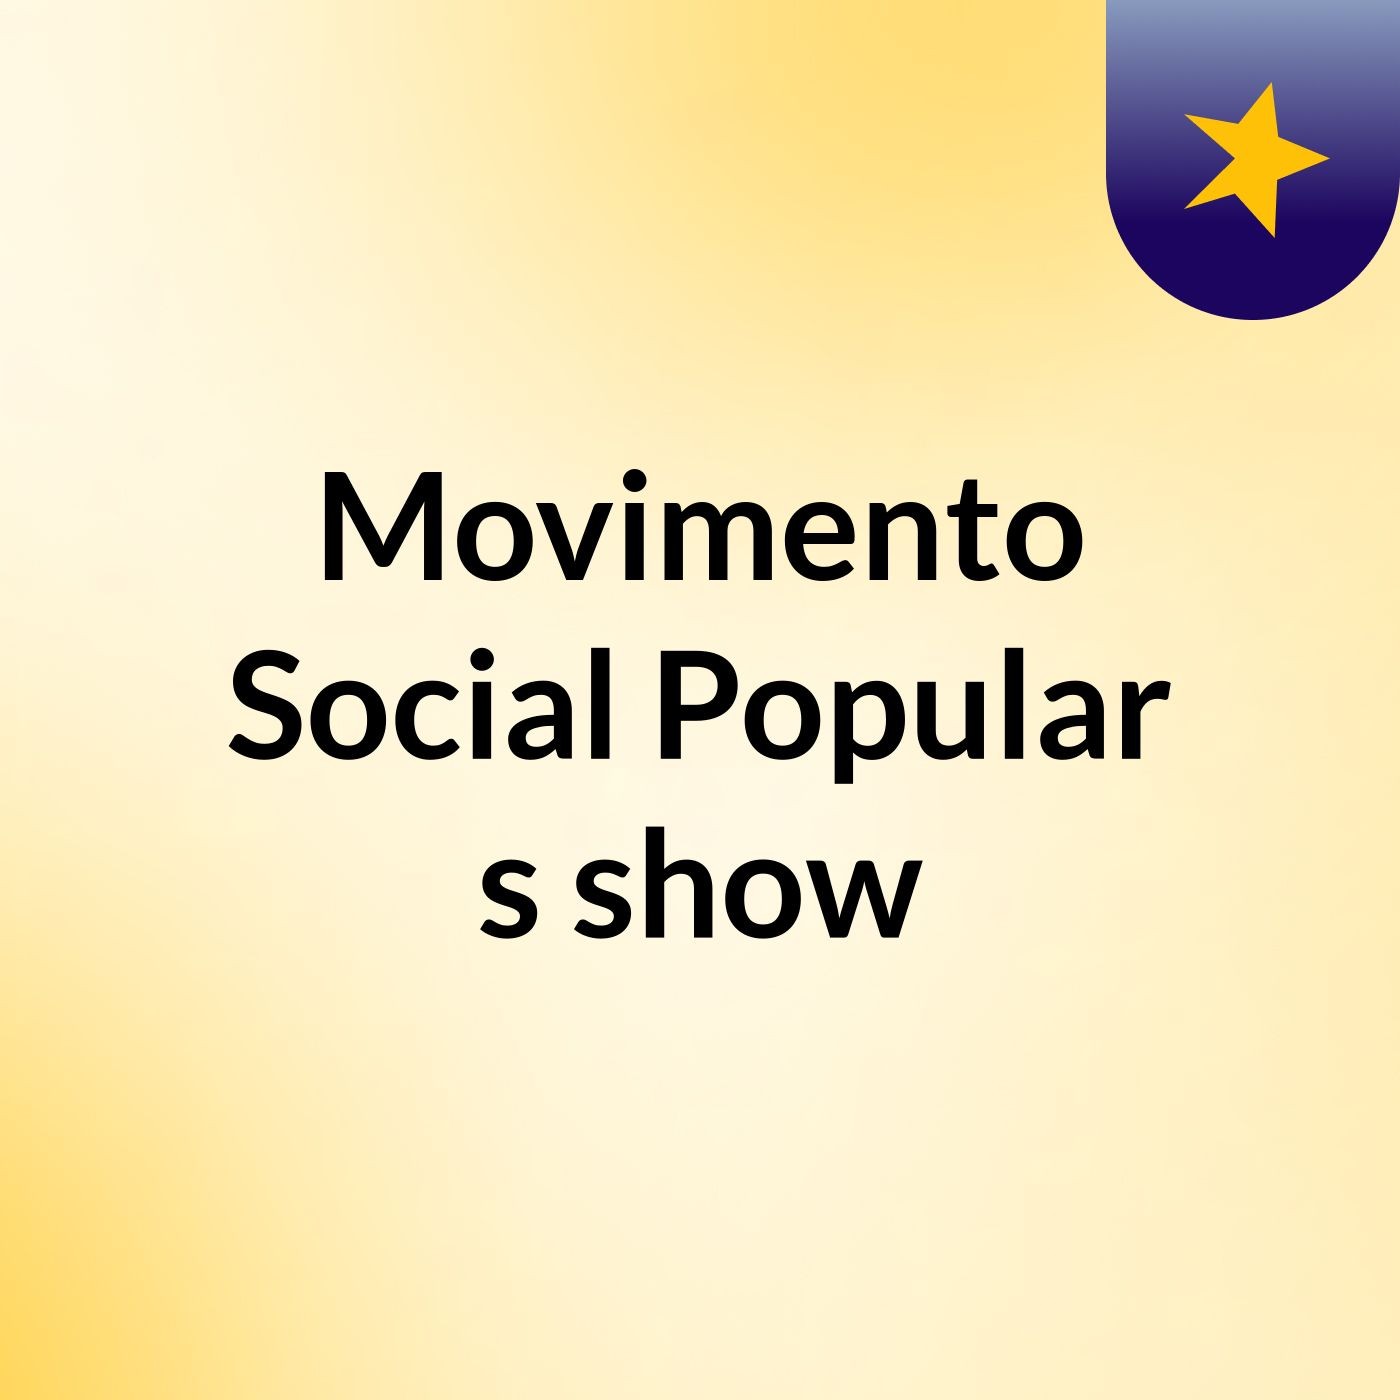 Movimento Social Popular's show